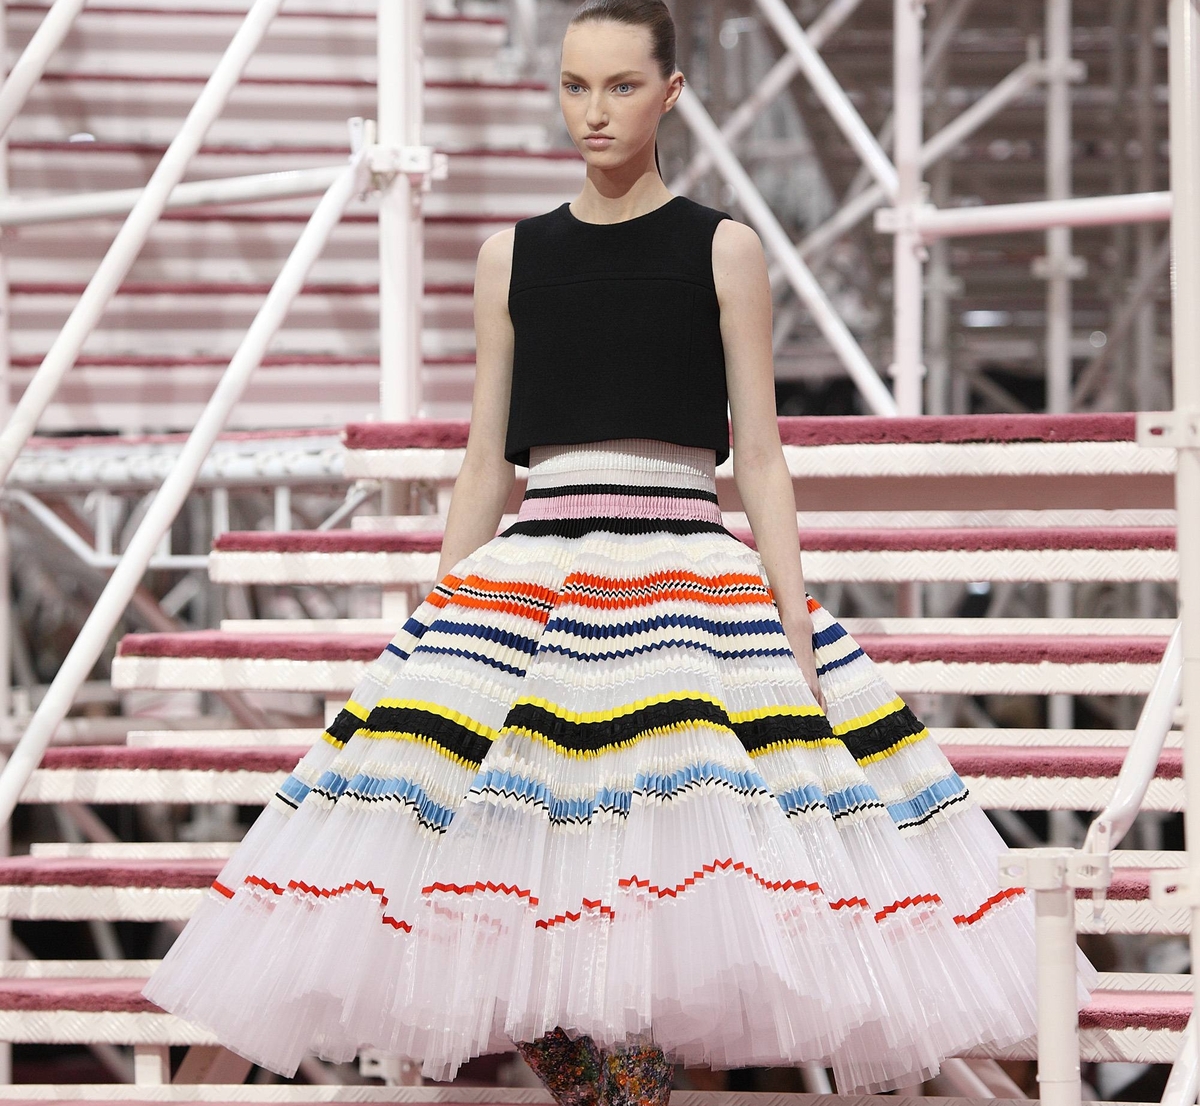 Модный показ новой коллекции Christian Dior Haute Couture. Весна / лето 2015